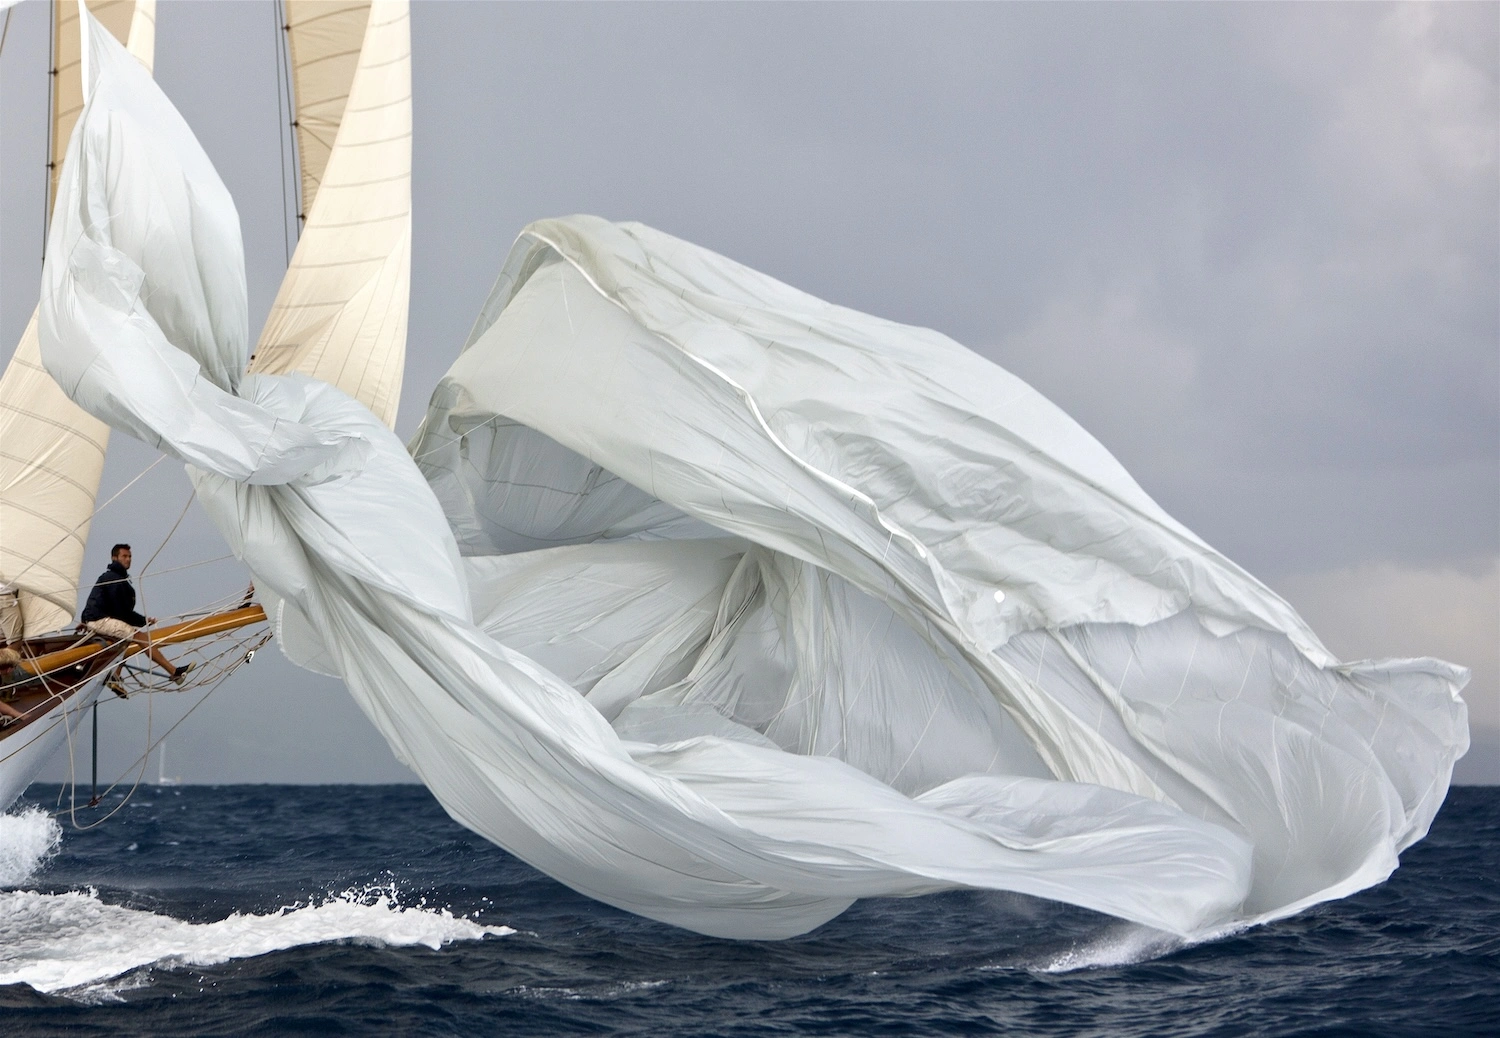 Capturer la férocité du Yachting avec Gilles Martin-Raget 01